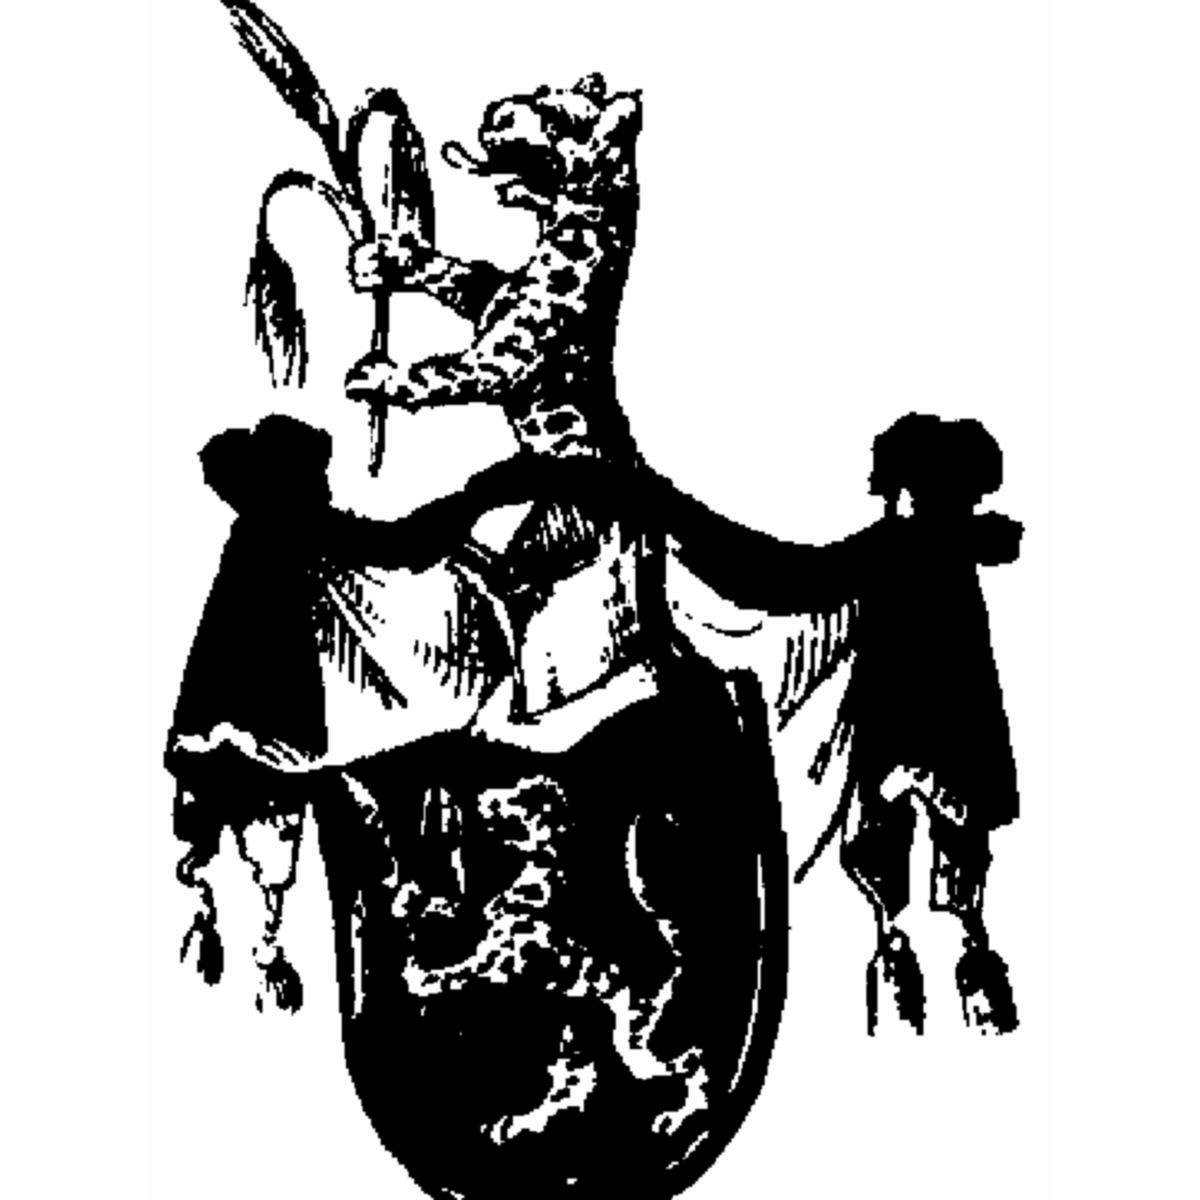 Wappen der Familie Manzini